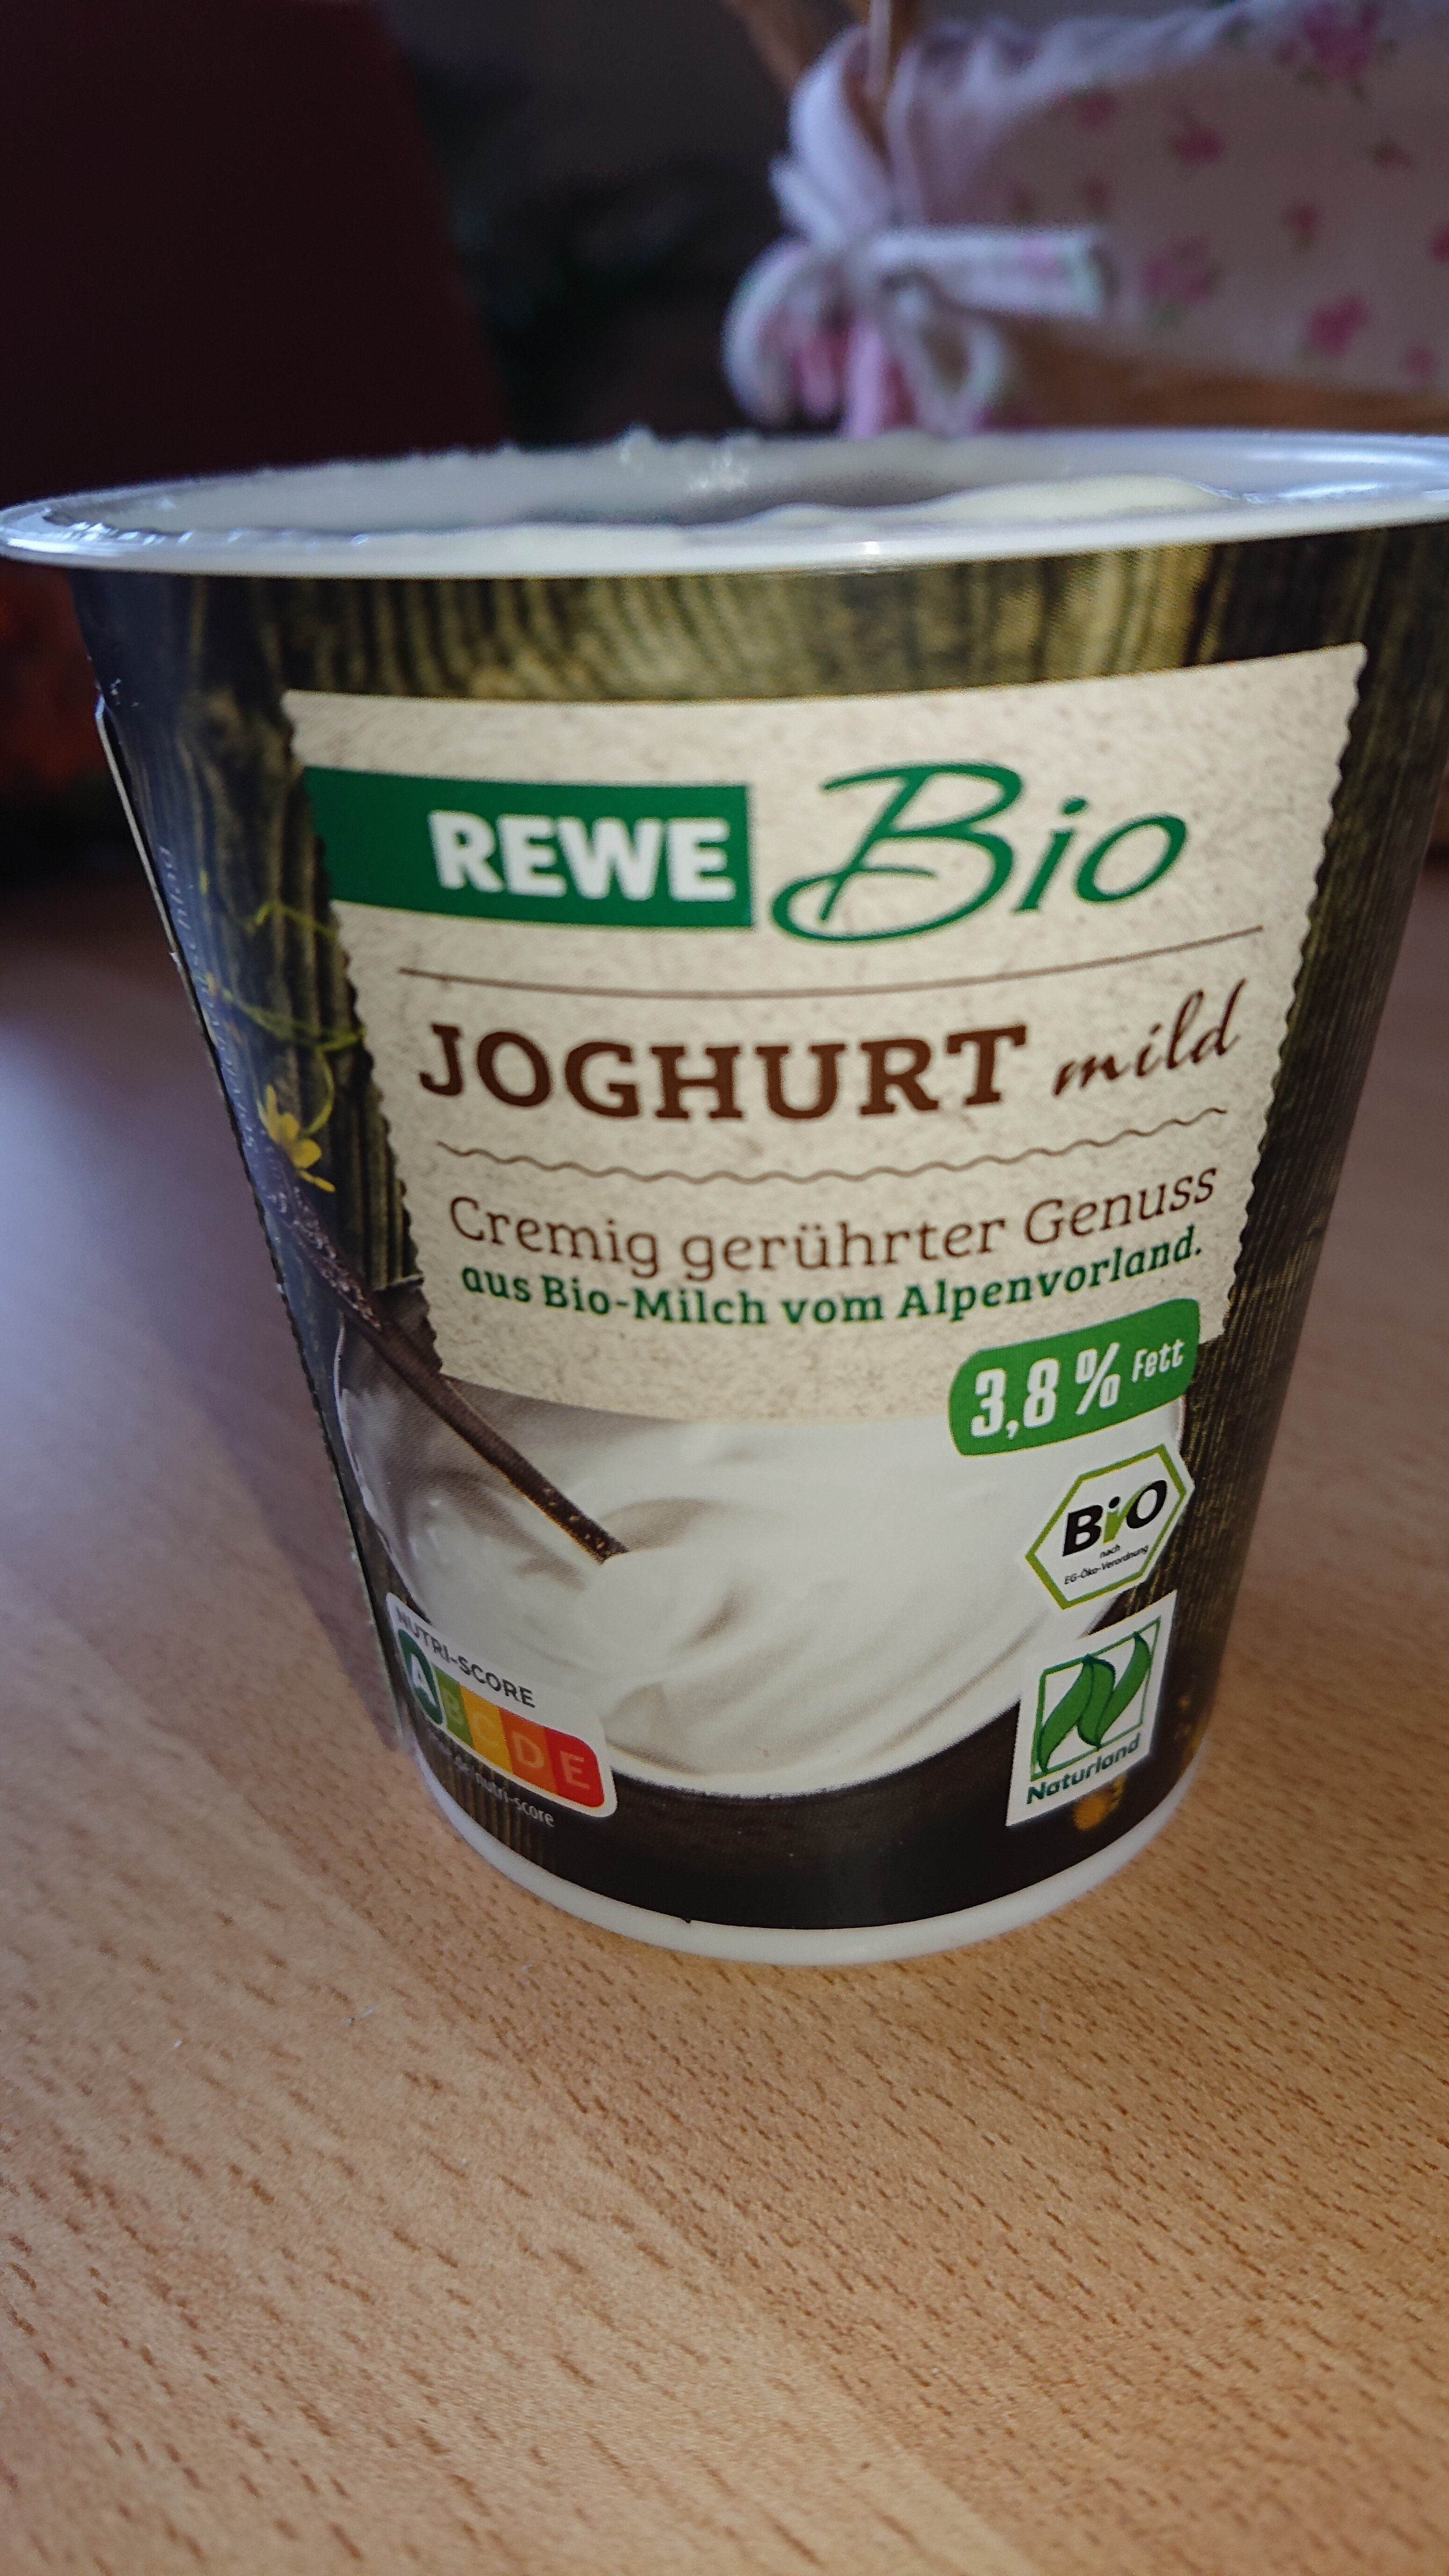 Joghurt mild 3.8% - Produkt